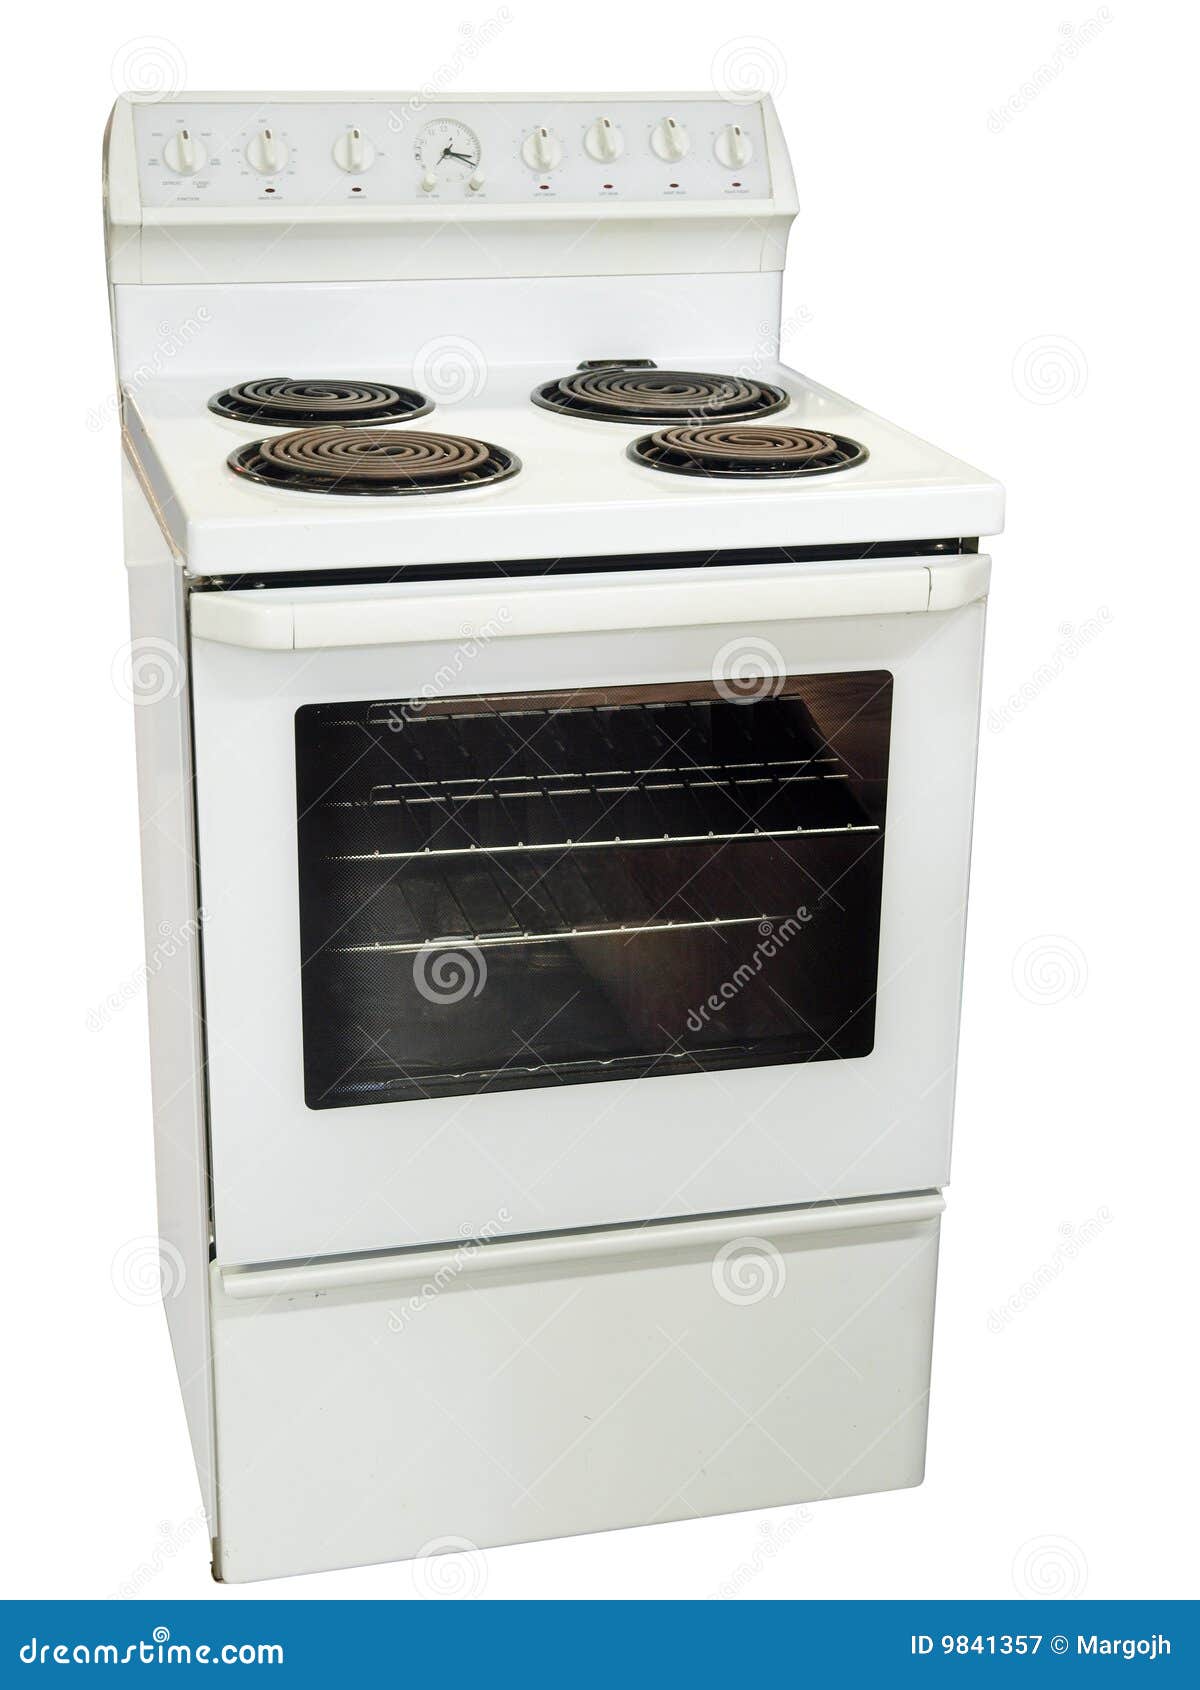 white kitchen stove